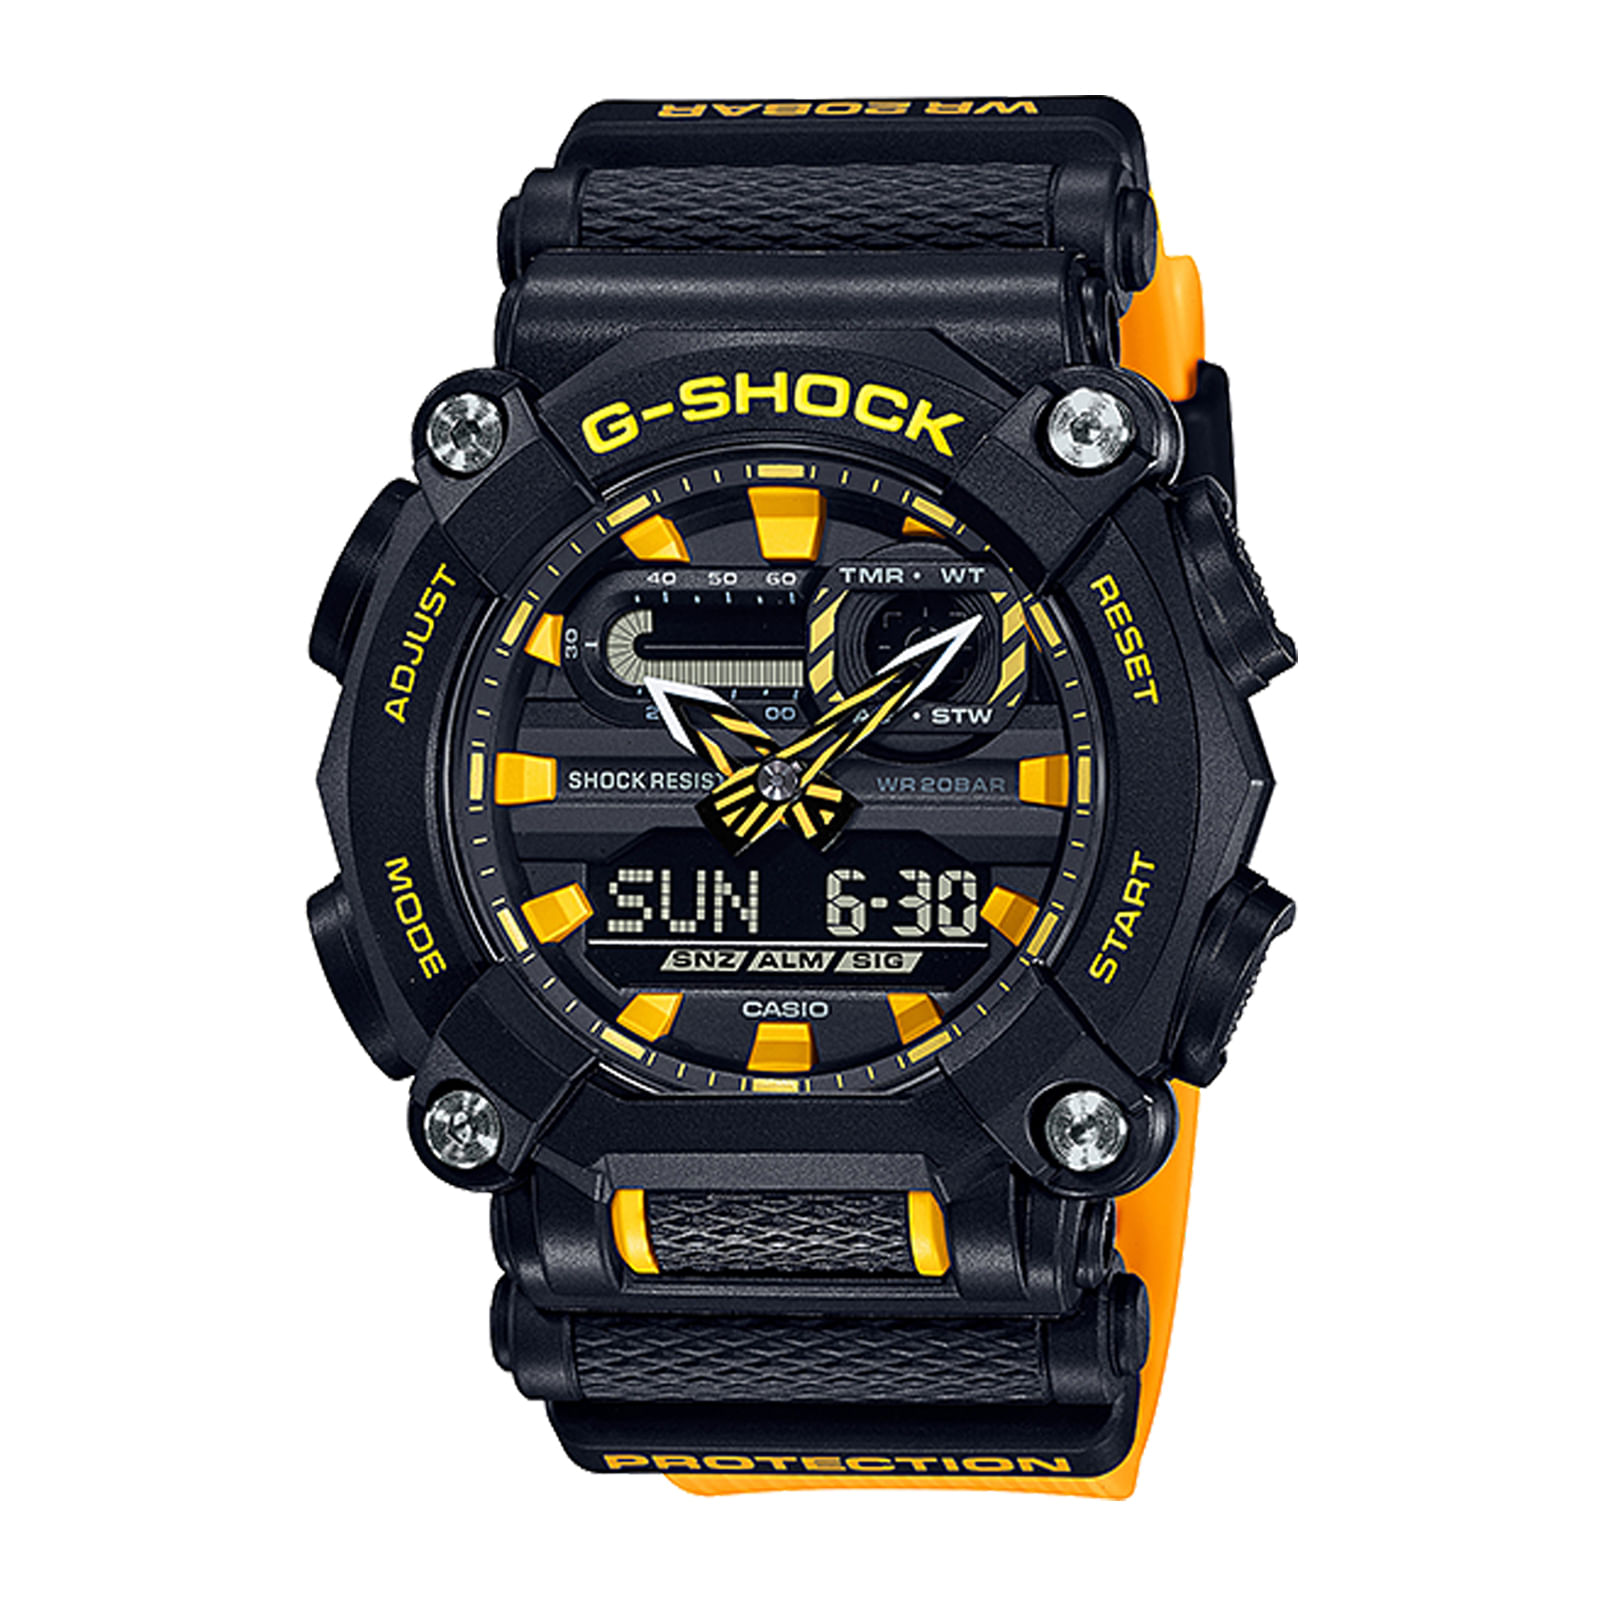 Reloj G-SHOCK GA-900A-1A9 Resina Hombre Negro